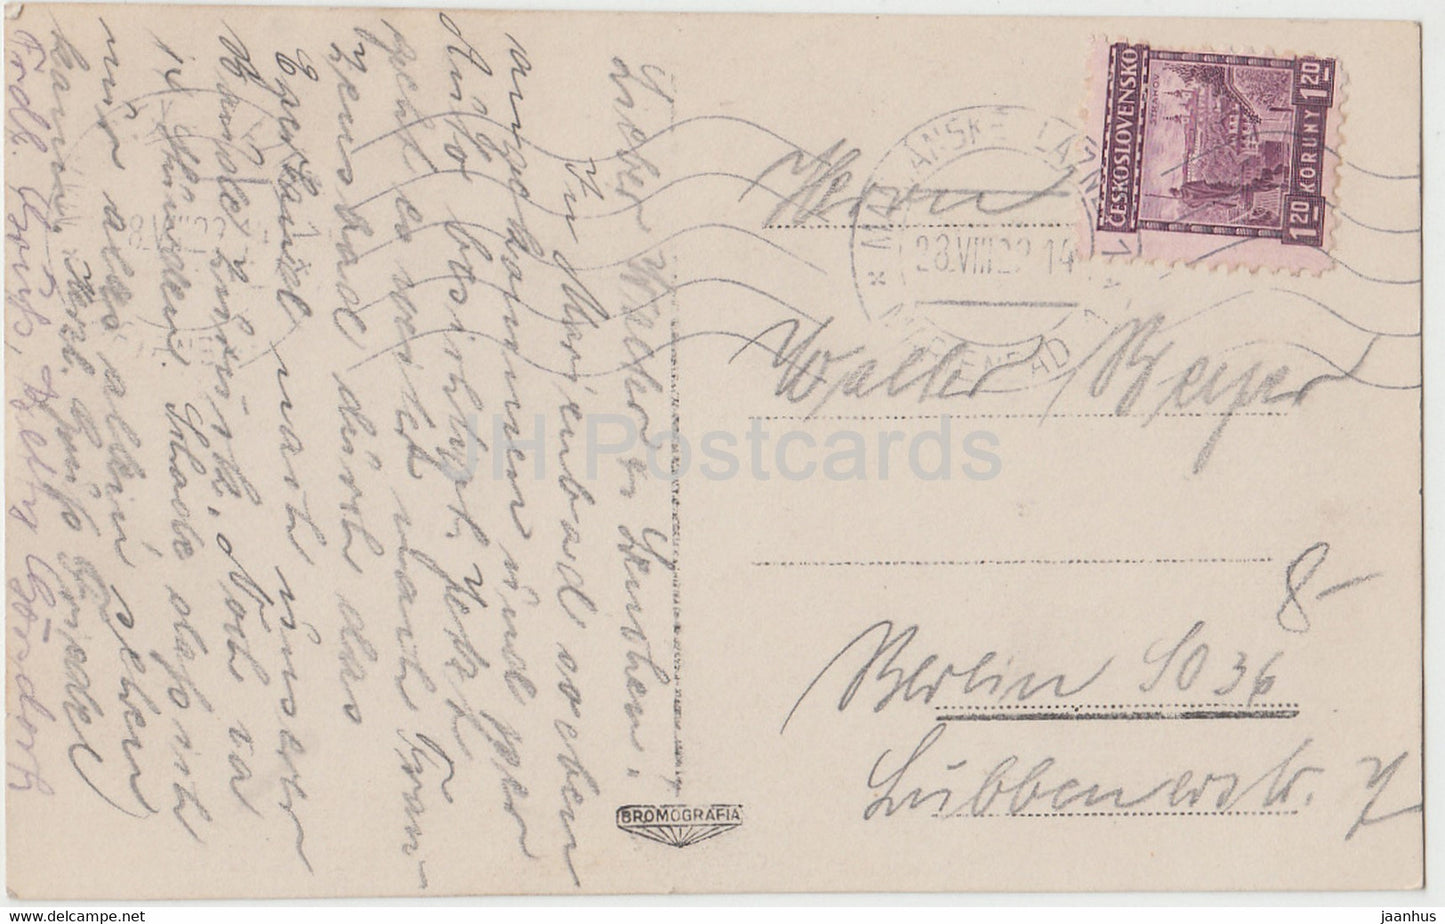 Marianske Lazne - Marienbad - Blick ad Hauptstrasse - 8022 - carte postale ancienne - 1929 Tchécoslovaquie - République tchèque - utilisé